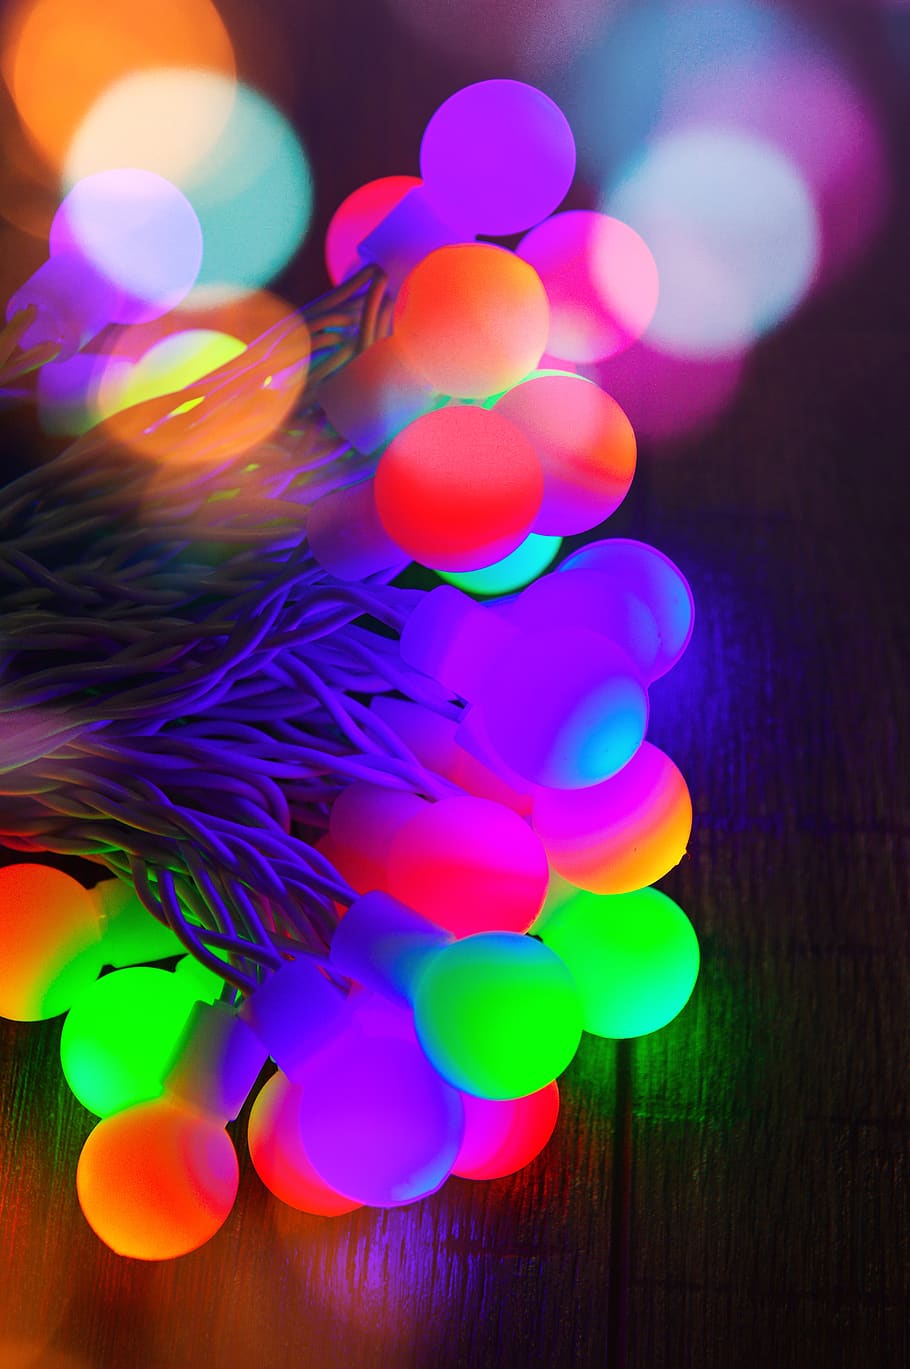 warna, bola lampu, cahaya, natal, lampu, dekorasi, bokeh, bersinar, latar belakang, perayaan